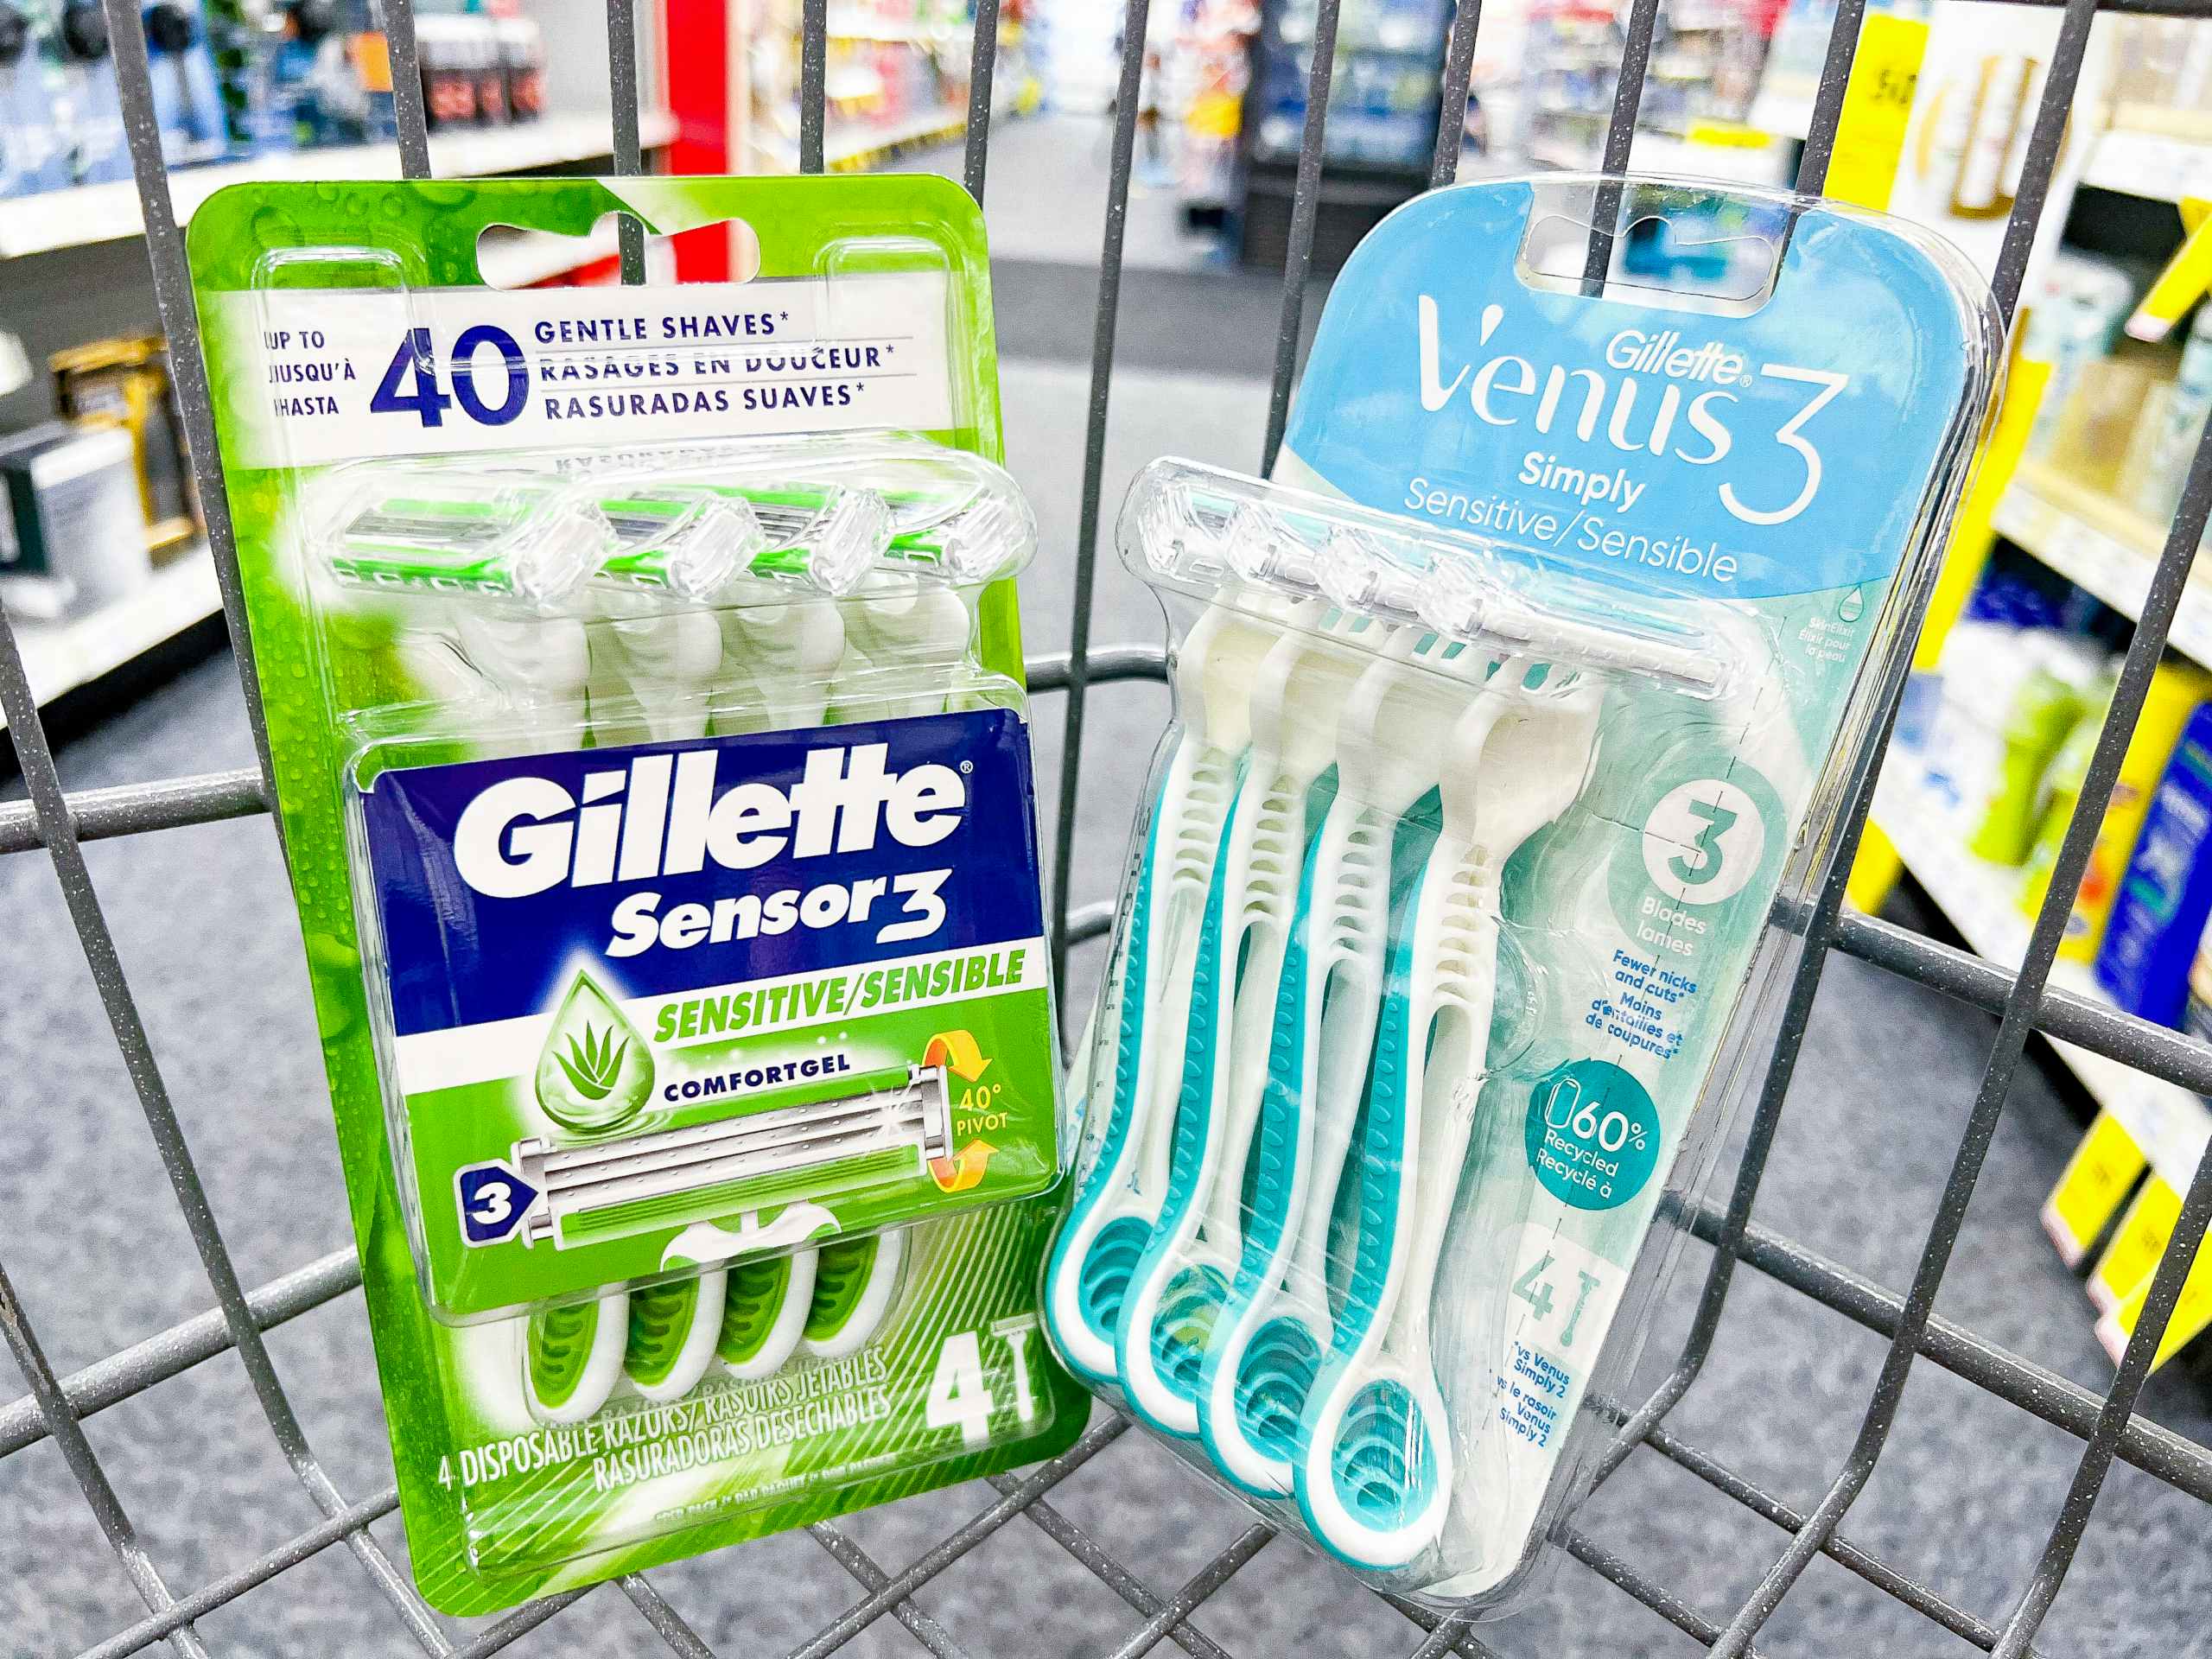 gillette & venus disposable razors in a cvs cart